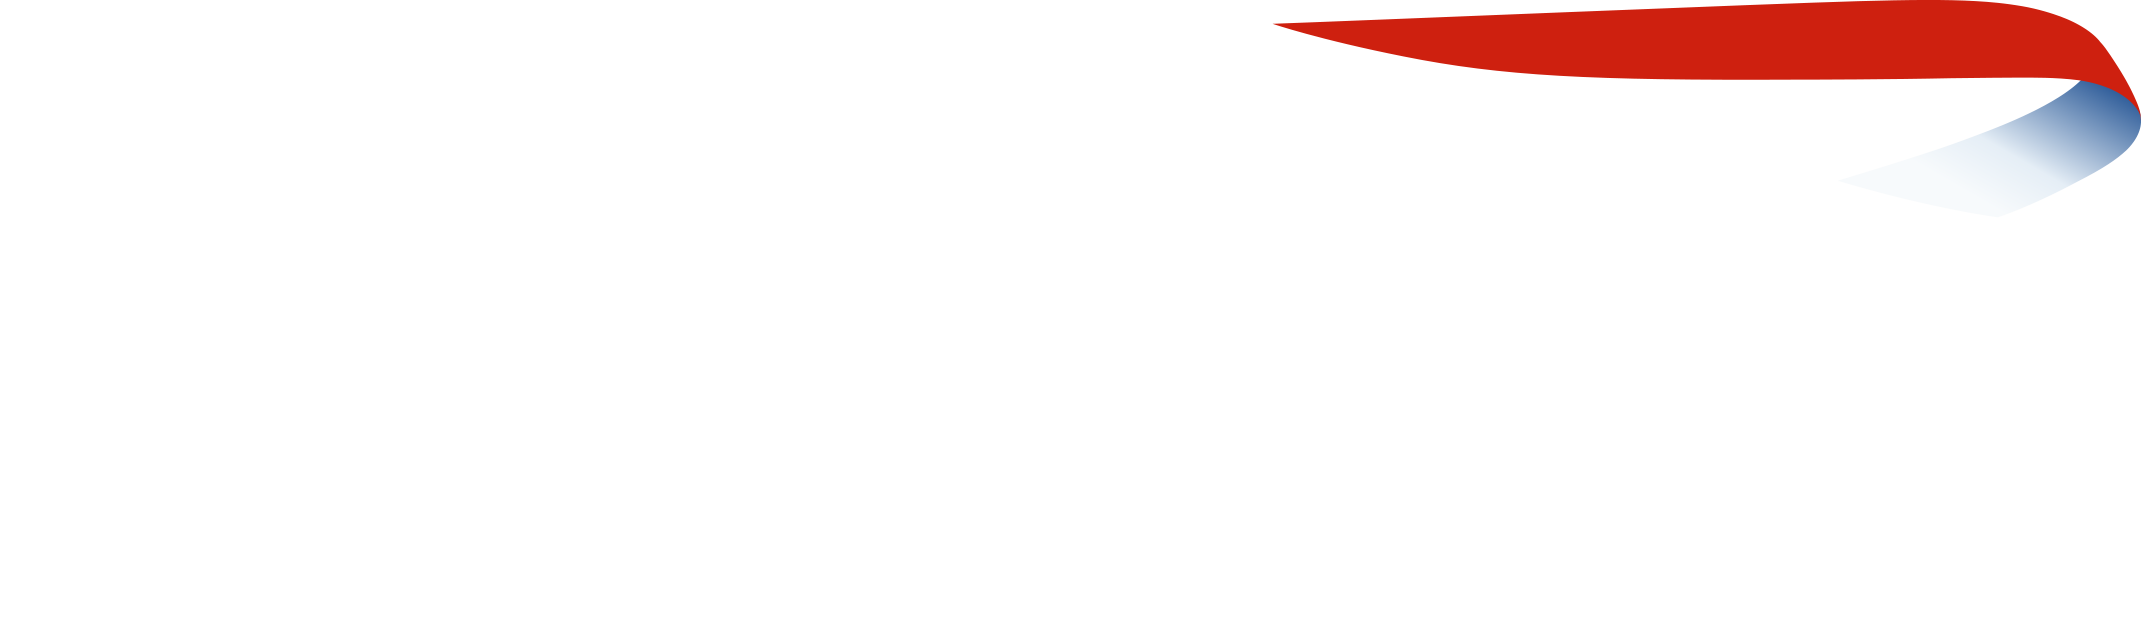 British Airways Holidays Logo